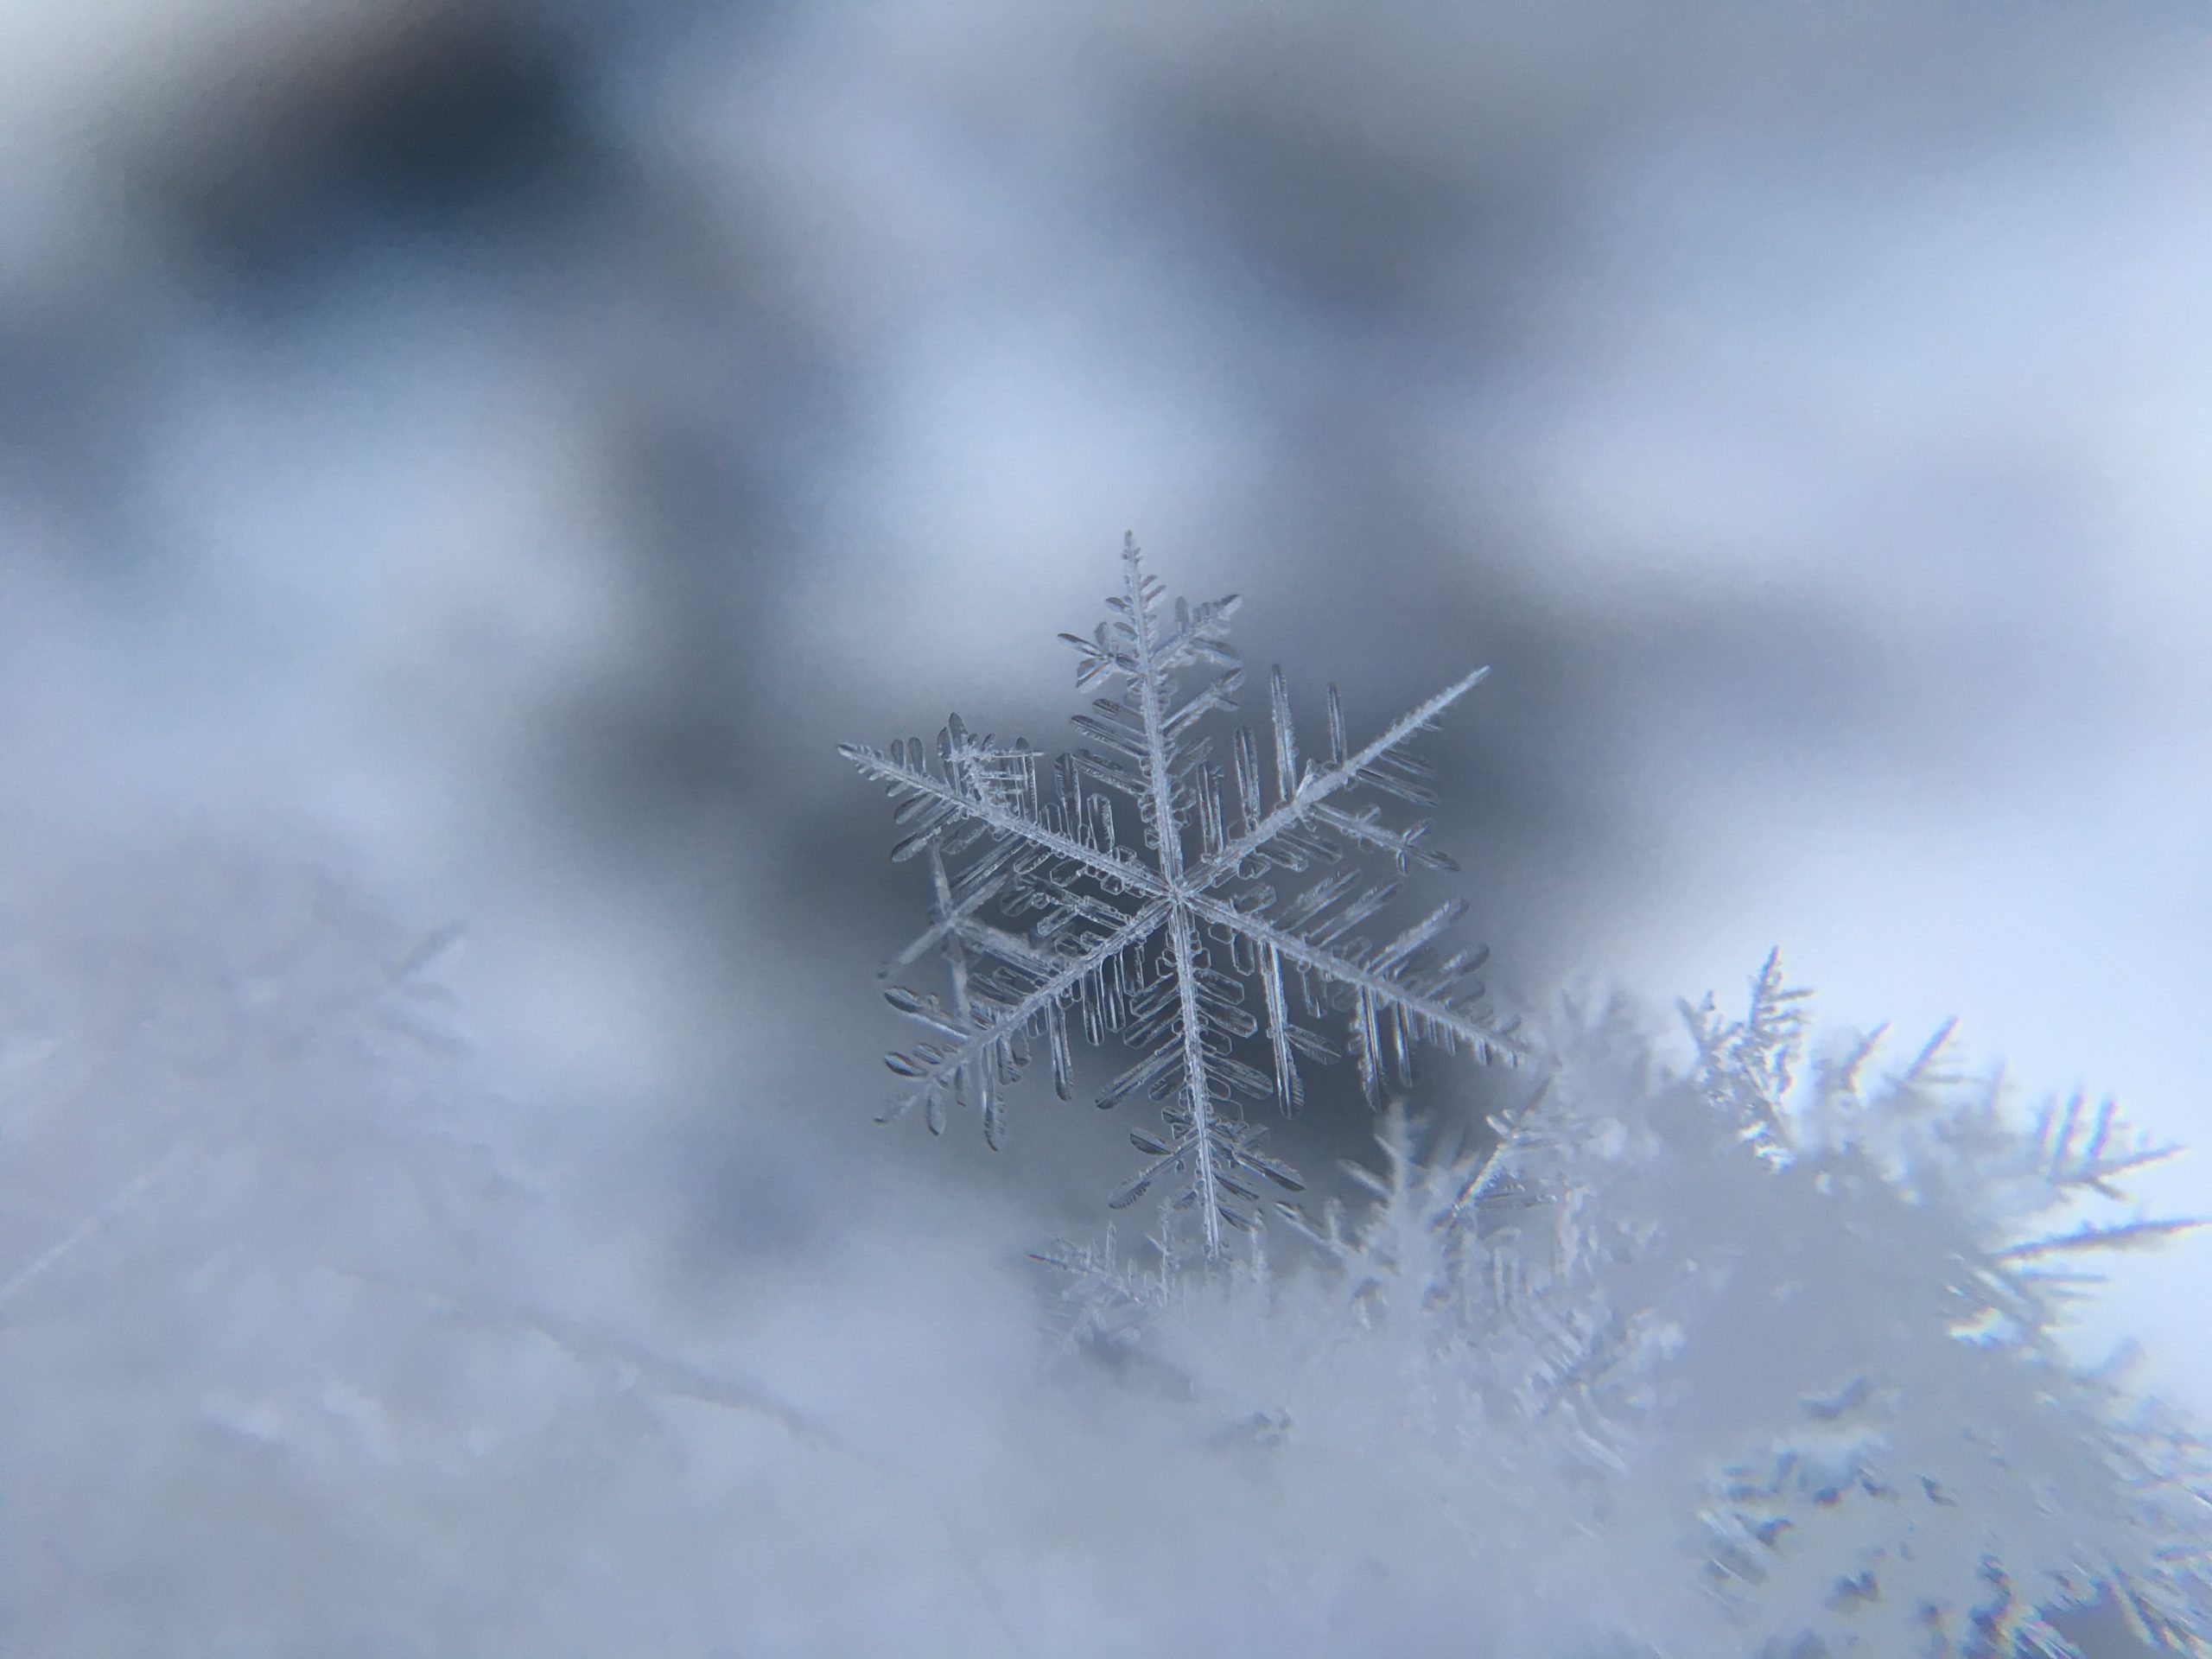 Snowflake up close